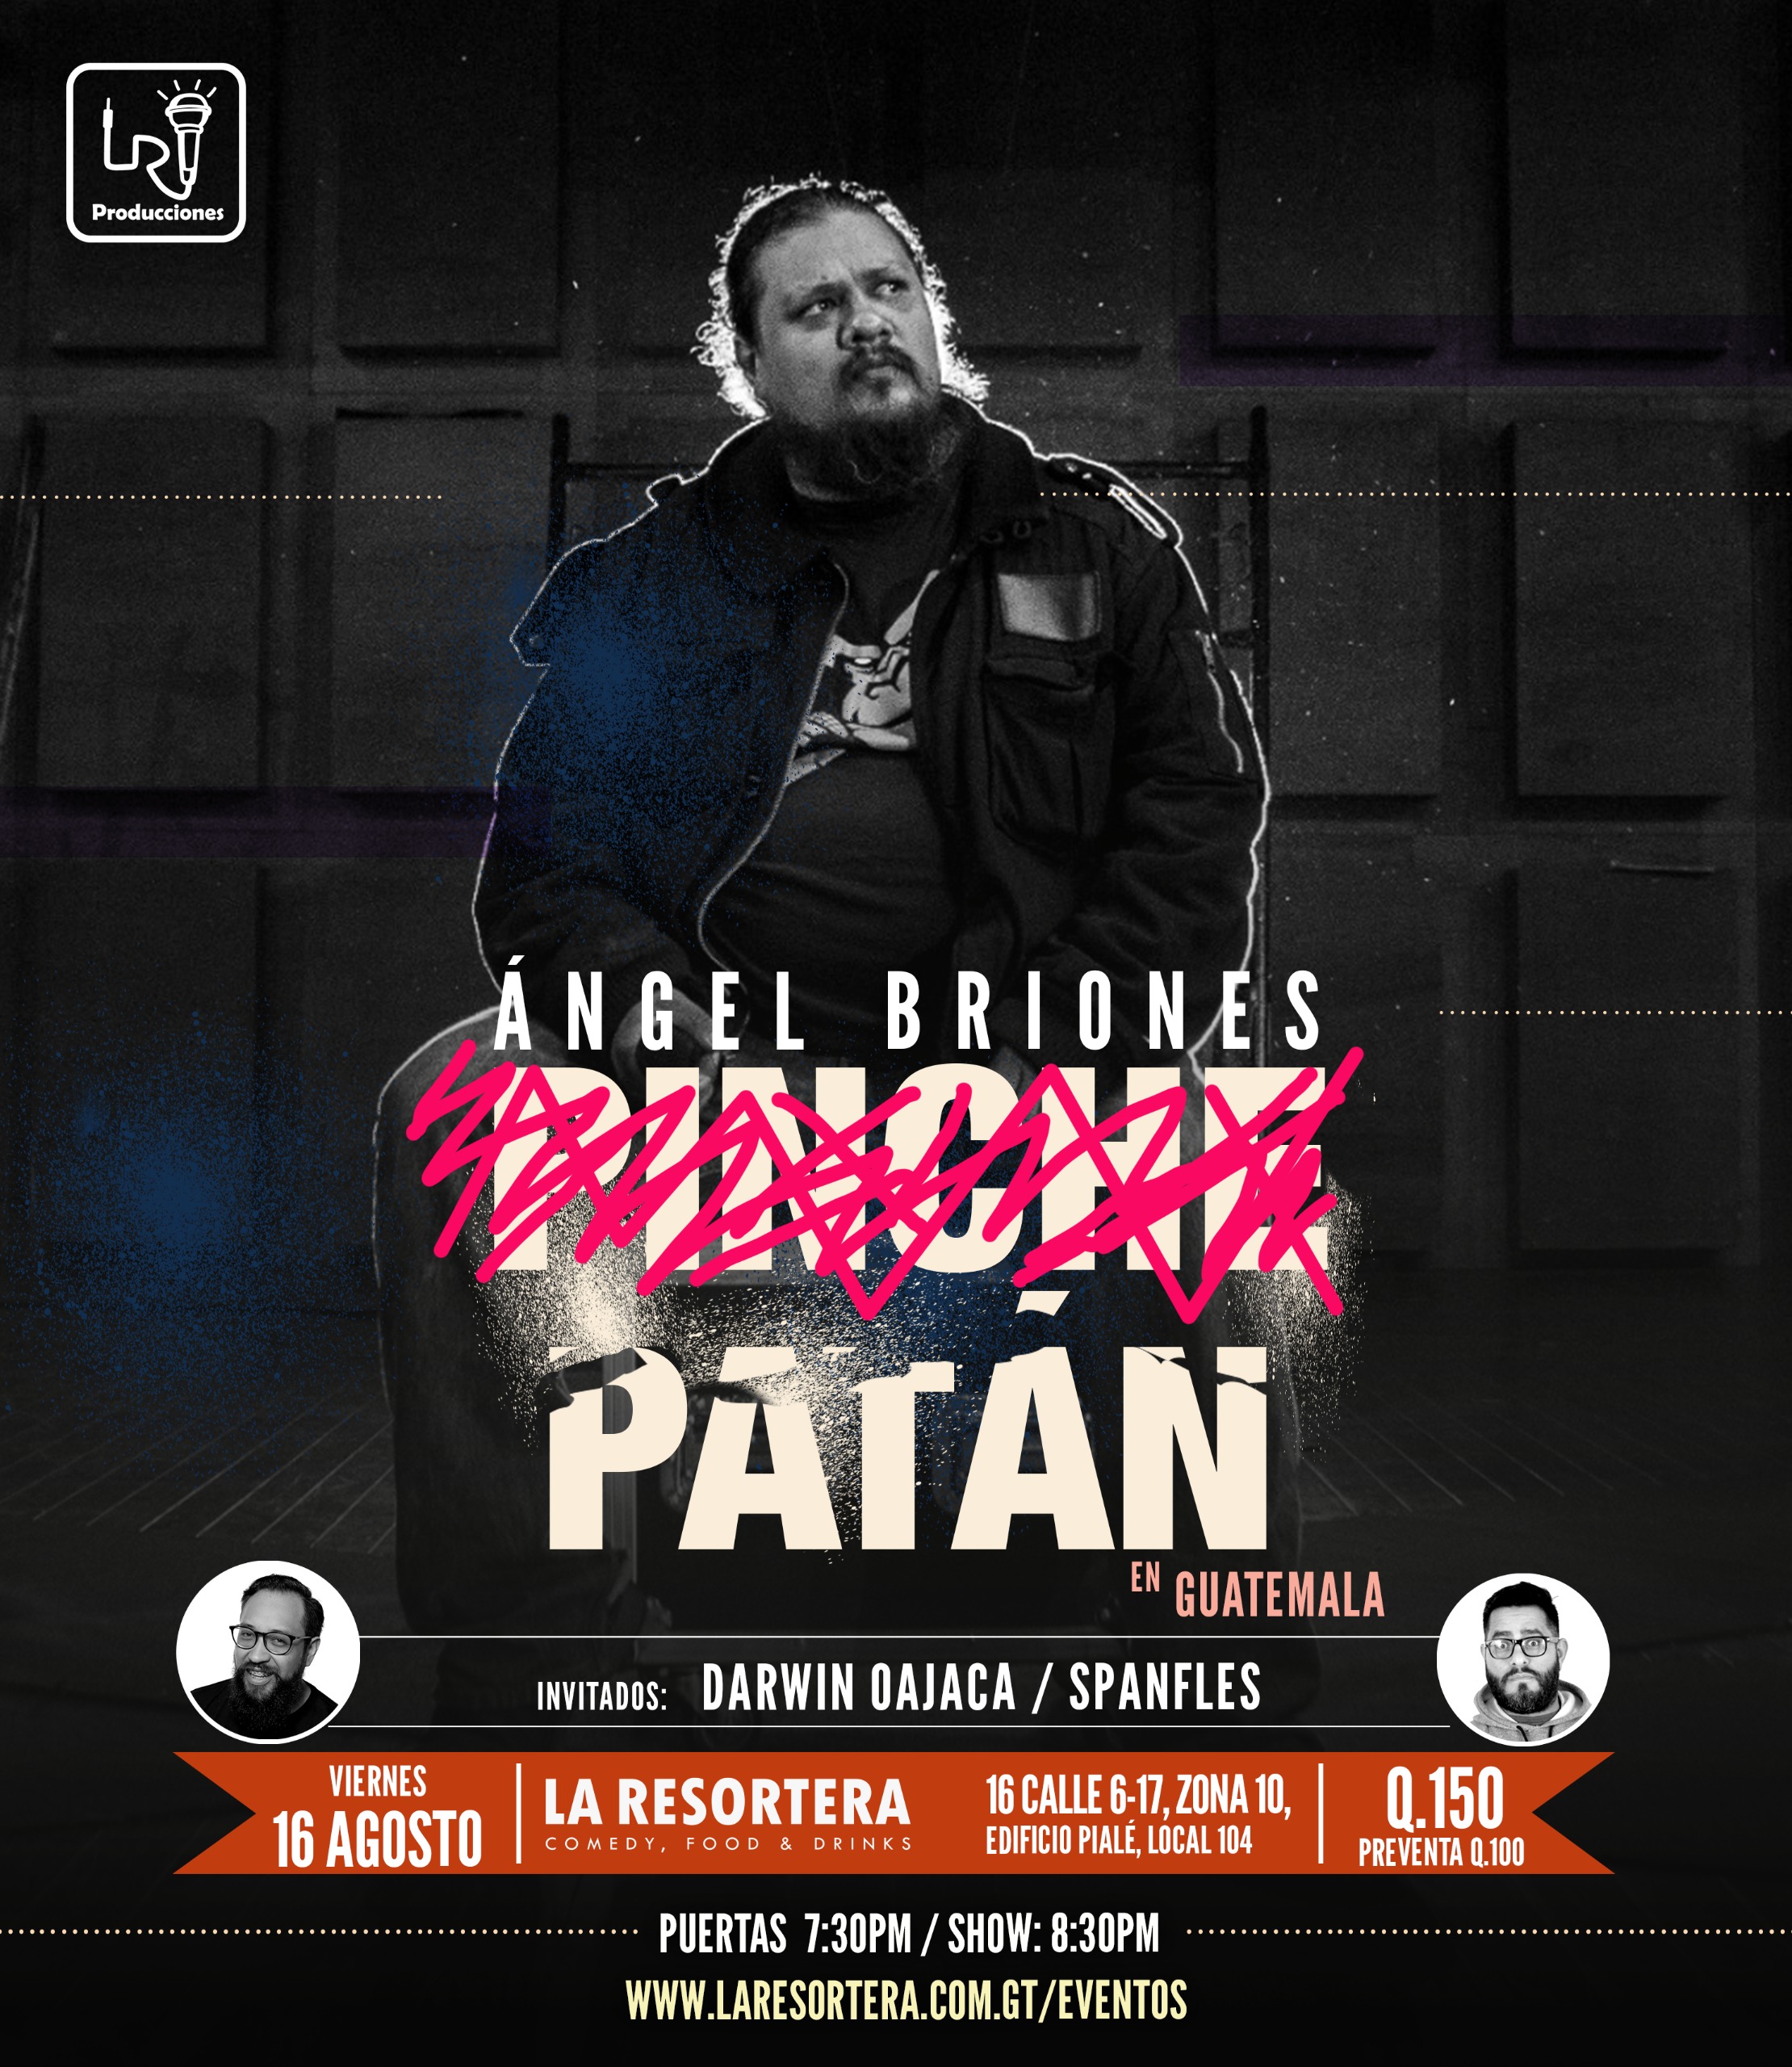 ANGEL BRIONES "PATAN" EN GUATEMALA